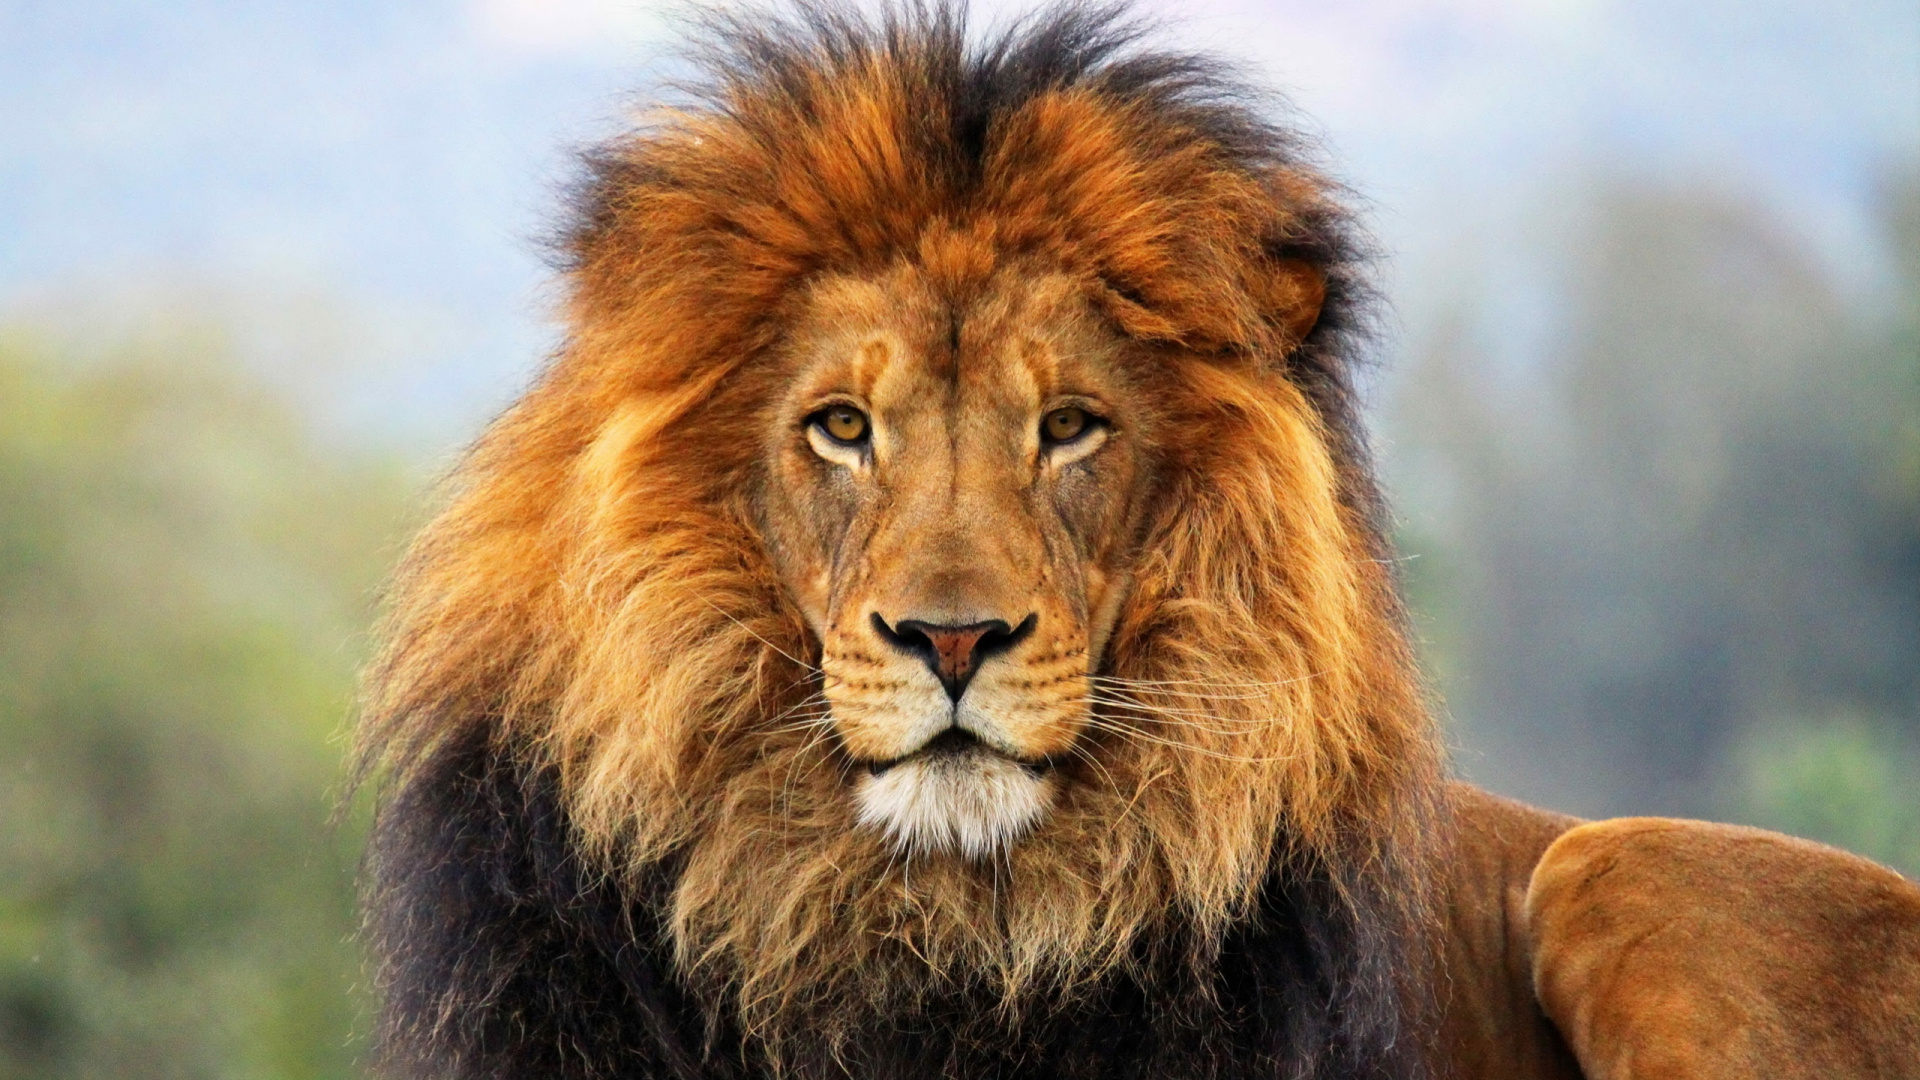 狮子, 野生动物, 马赛马的狮子, 陆地动物, 鬃毛 壁纸 1920x1080 允许